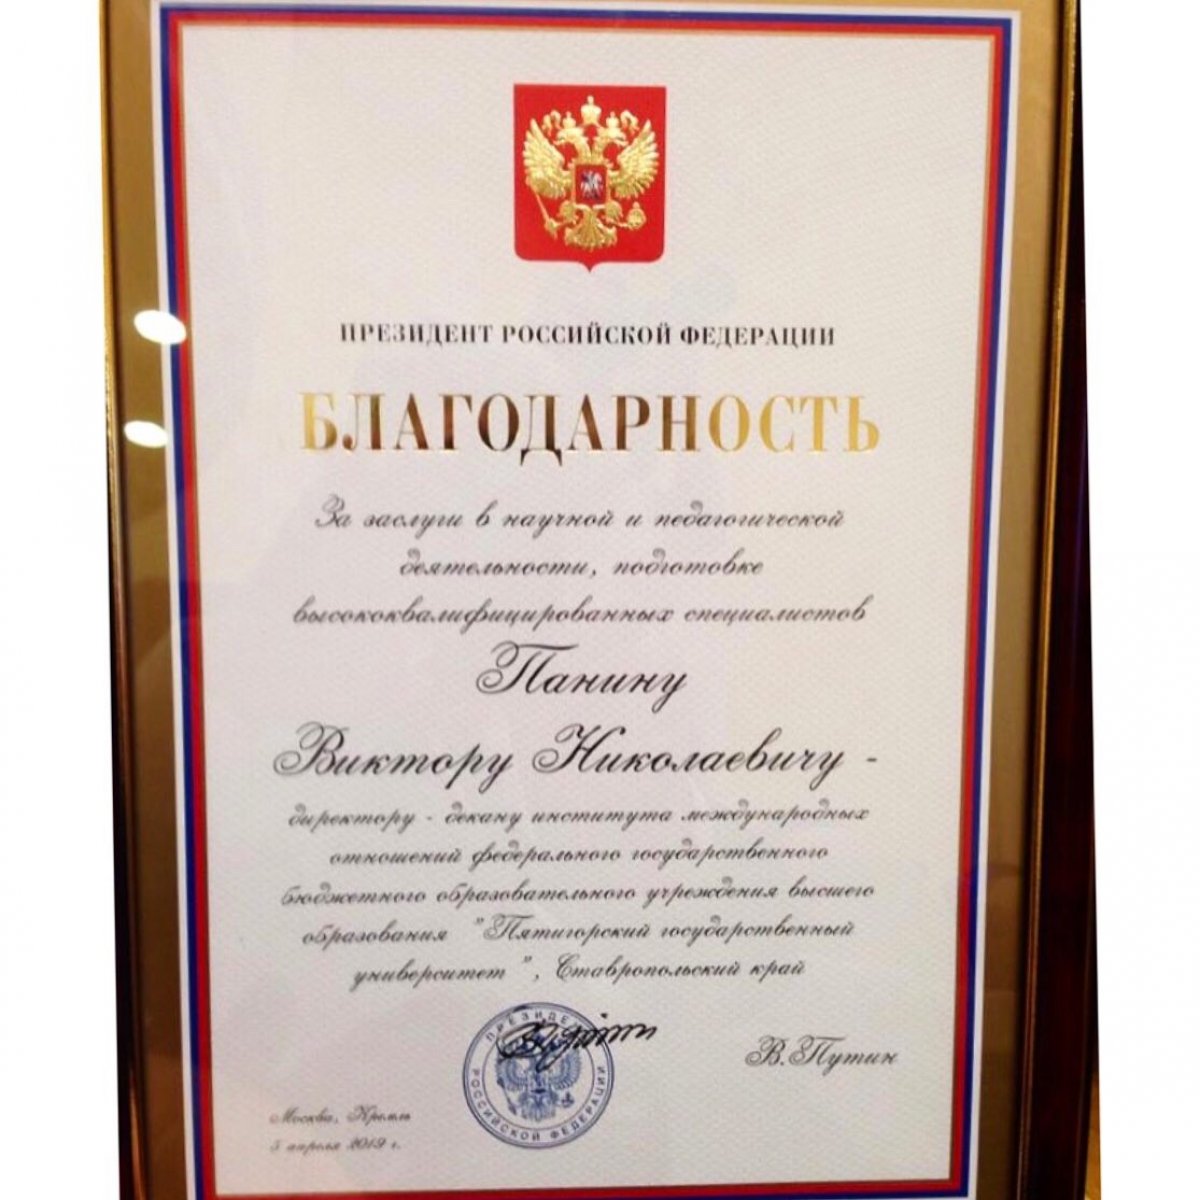 6 июня в г. Ставрополе состоялась торжественная церемония вручения государственных наград Российской Федерации и наград Ставропольского края, посвящённая Дню России.